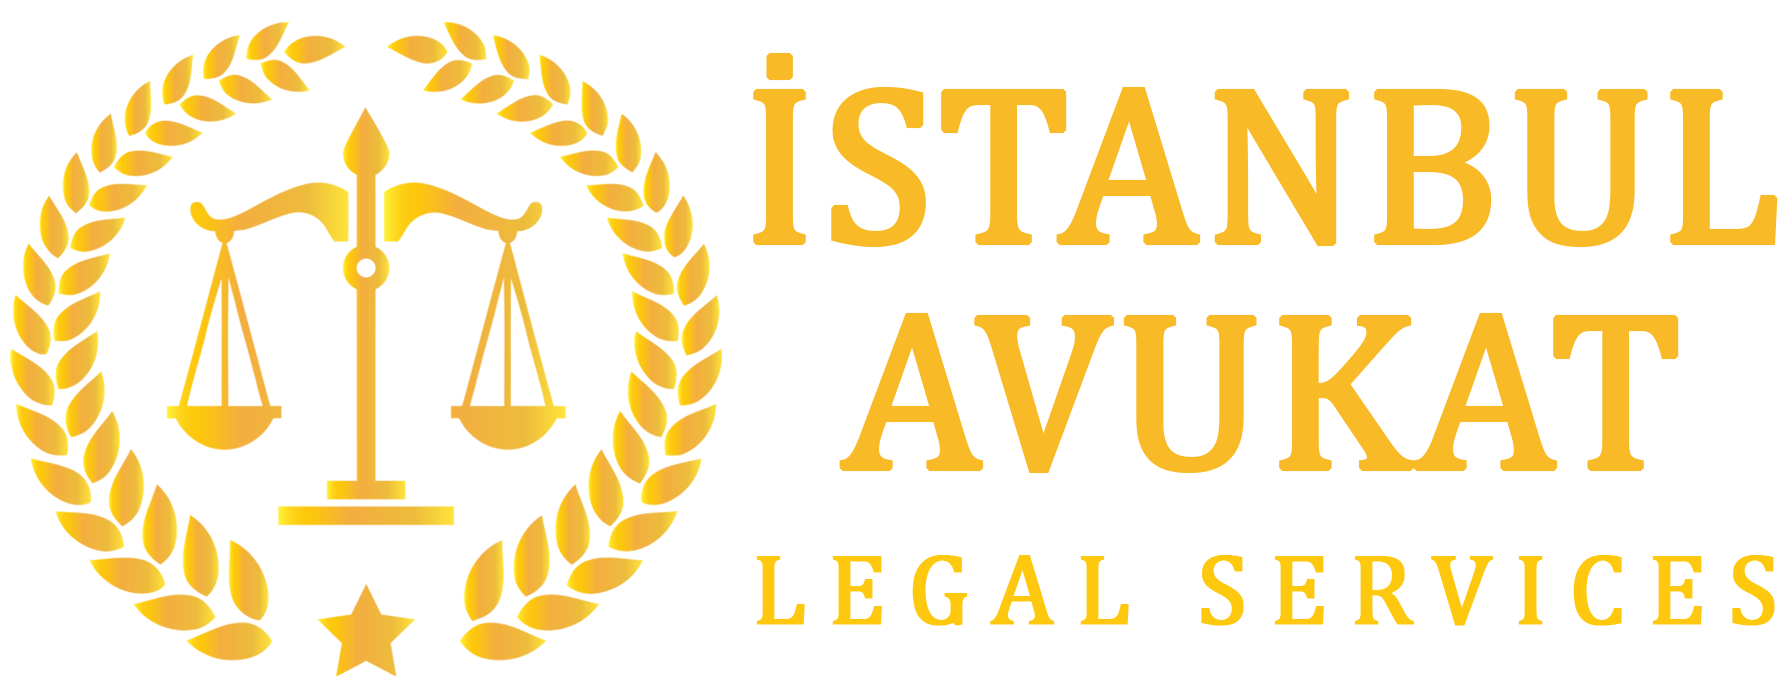 محامي في اسطنبول يتكلم العربية – مكتب محاماة في اسطنبول